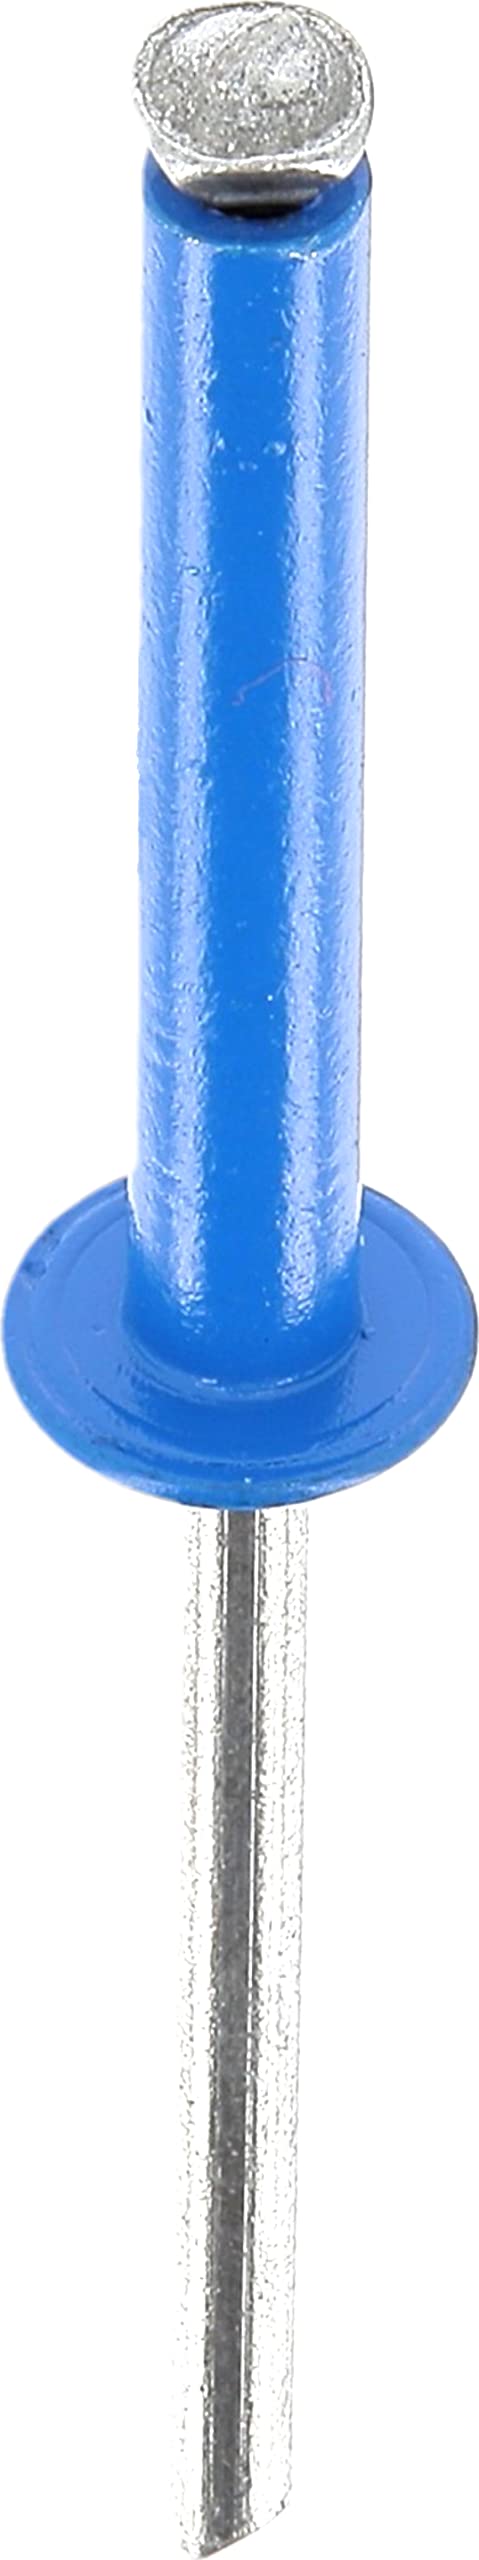 Restagraf 4931 Niete, 15 bis 20 mm x 26 mm, Blau von Restagraf